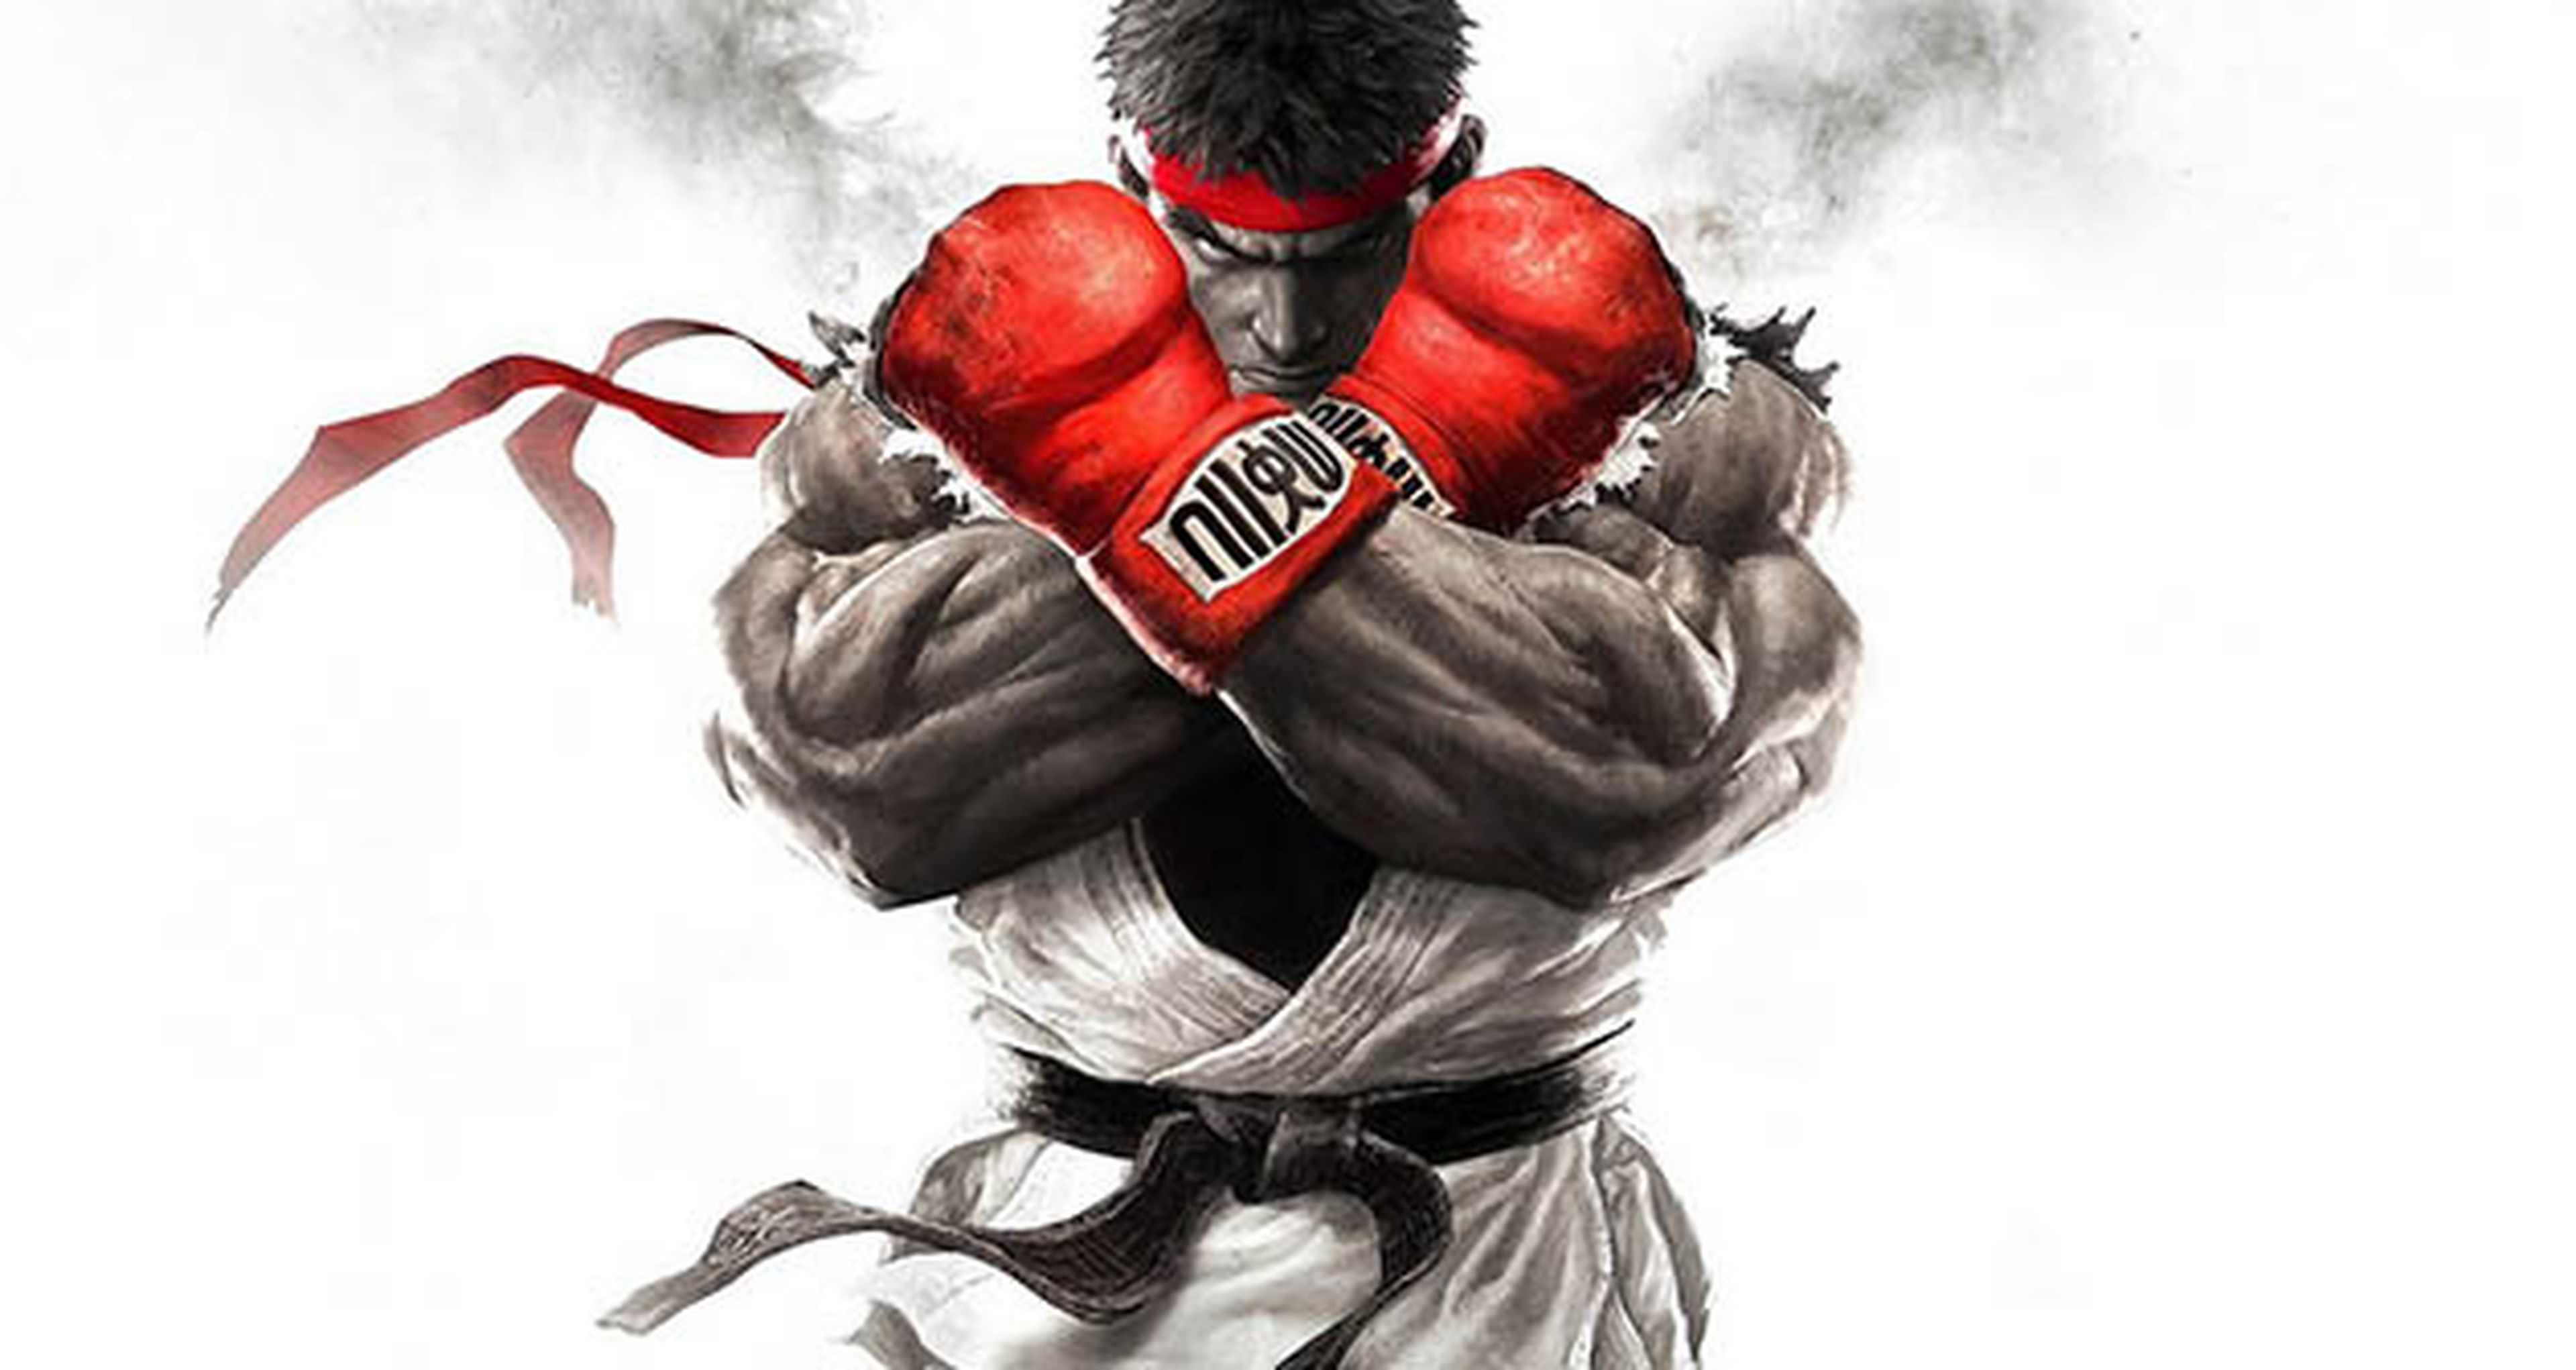 Galería de imágenes a 1080p de la beta en PS4 de Street Fighter V